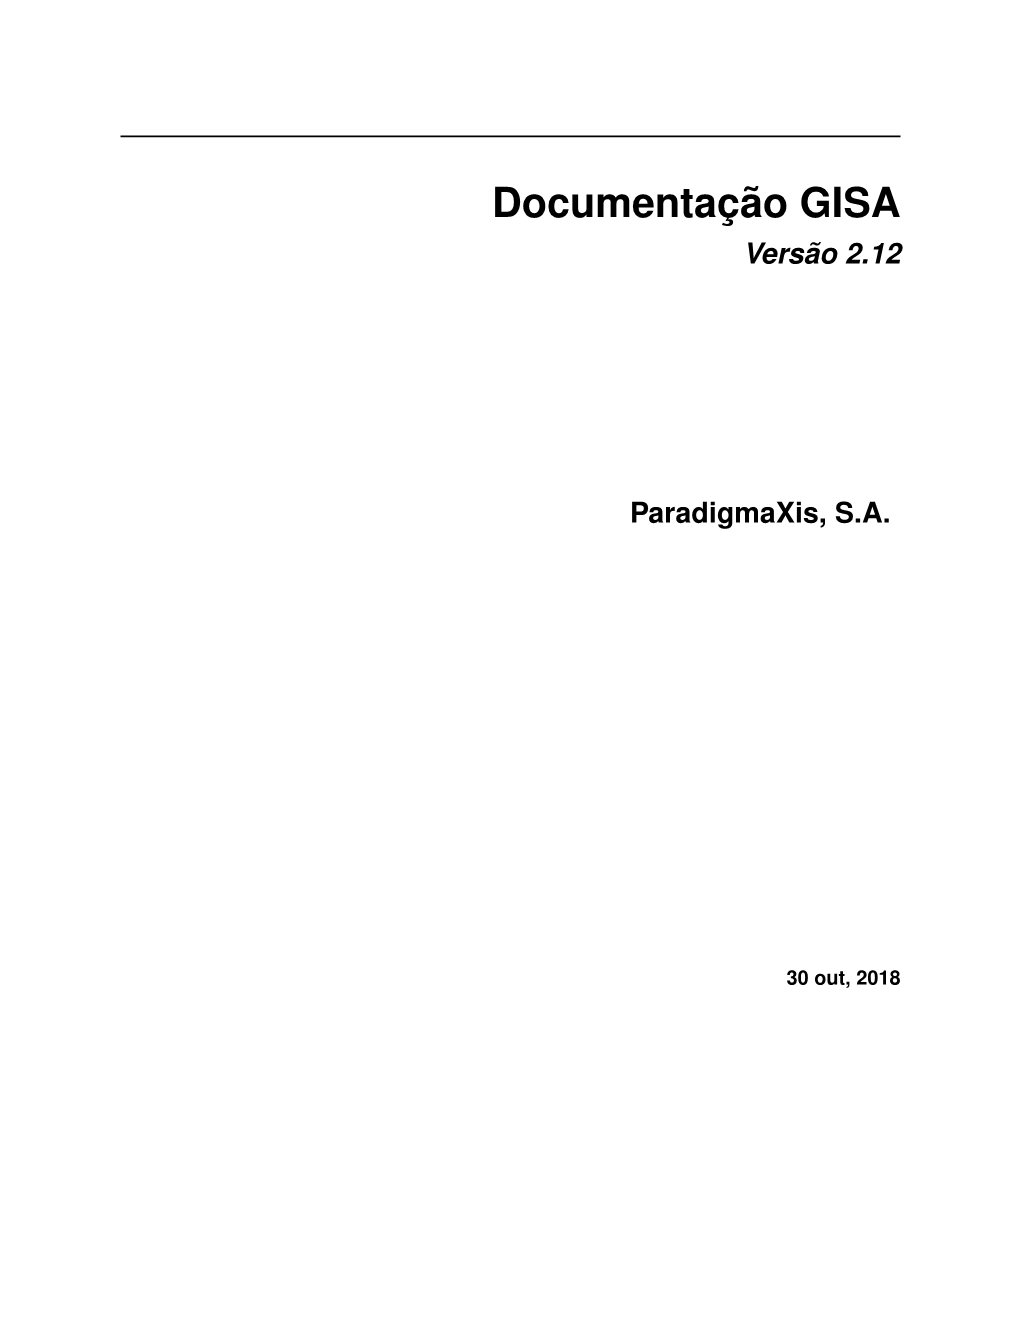 Documentação GISA Versão 2.12